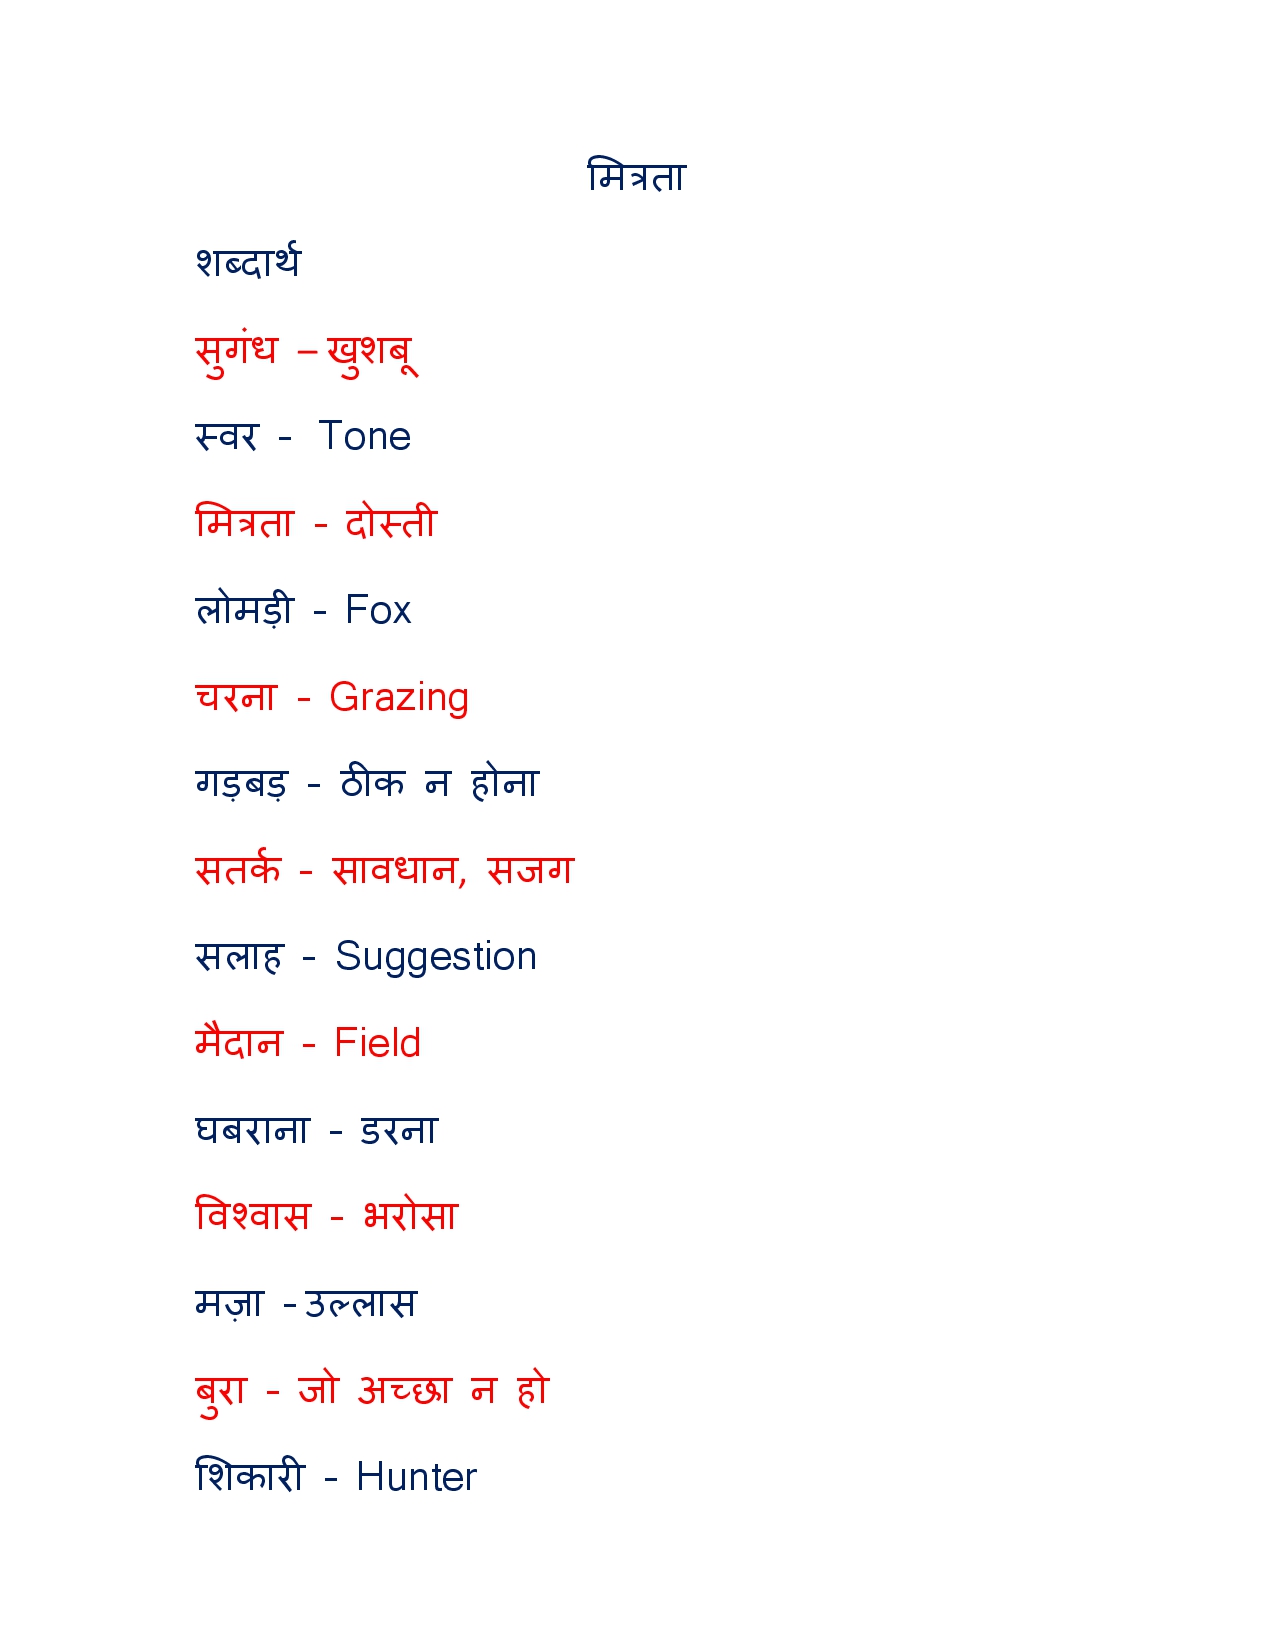 Chutzpah Meaning in Hindi - Chutzpah – शब्द का अर्थ (Meaning), परिभाषा ( Definition), स्पष्टीकरण और वाक्यप्रयोग वाले उदाहरण (Examples) आप यहाँ पढ़  सकते है।